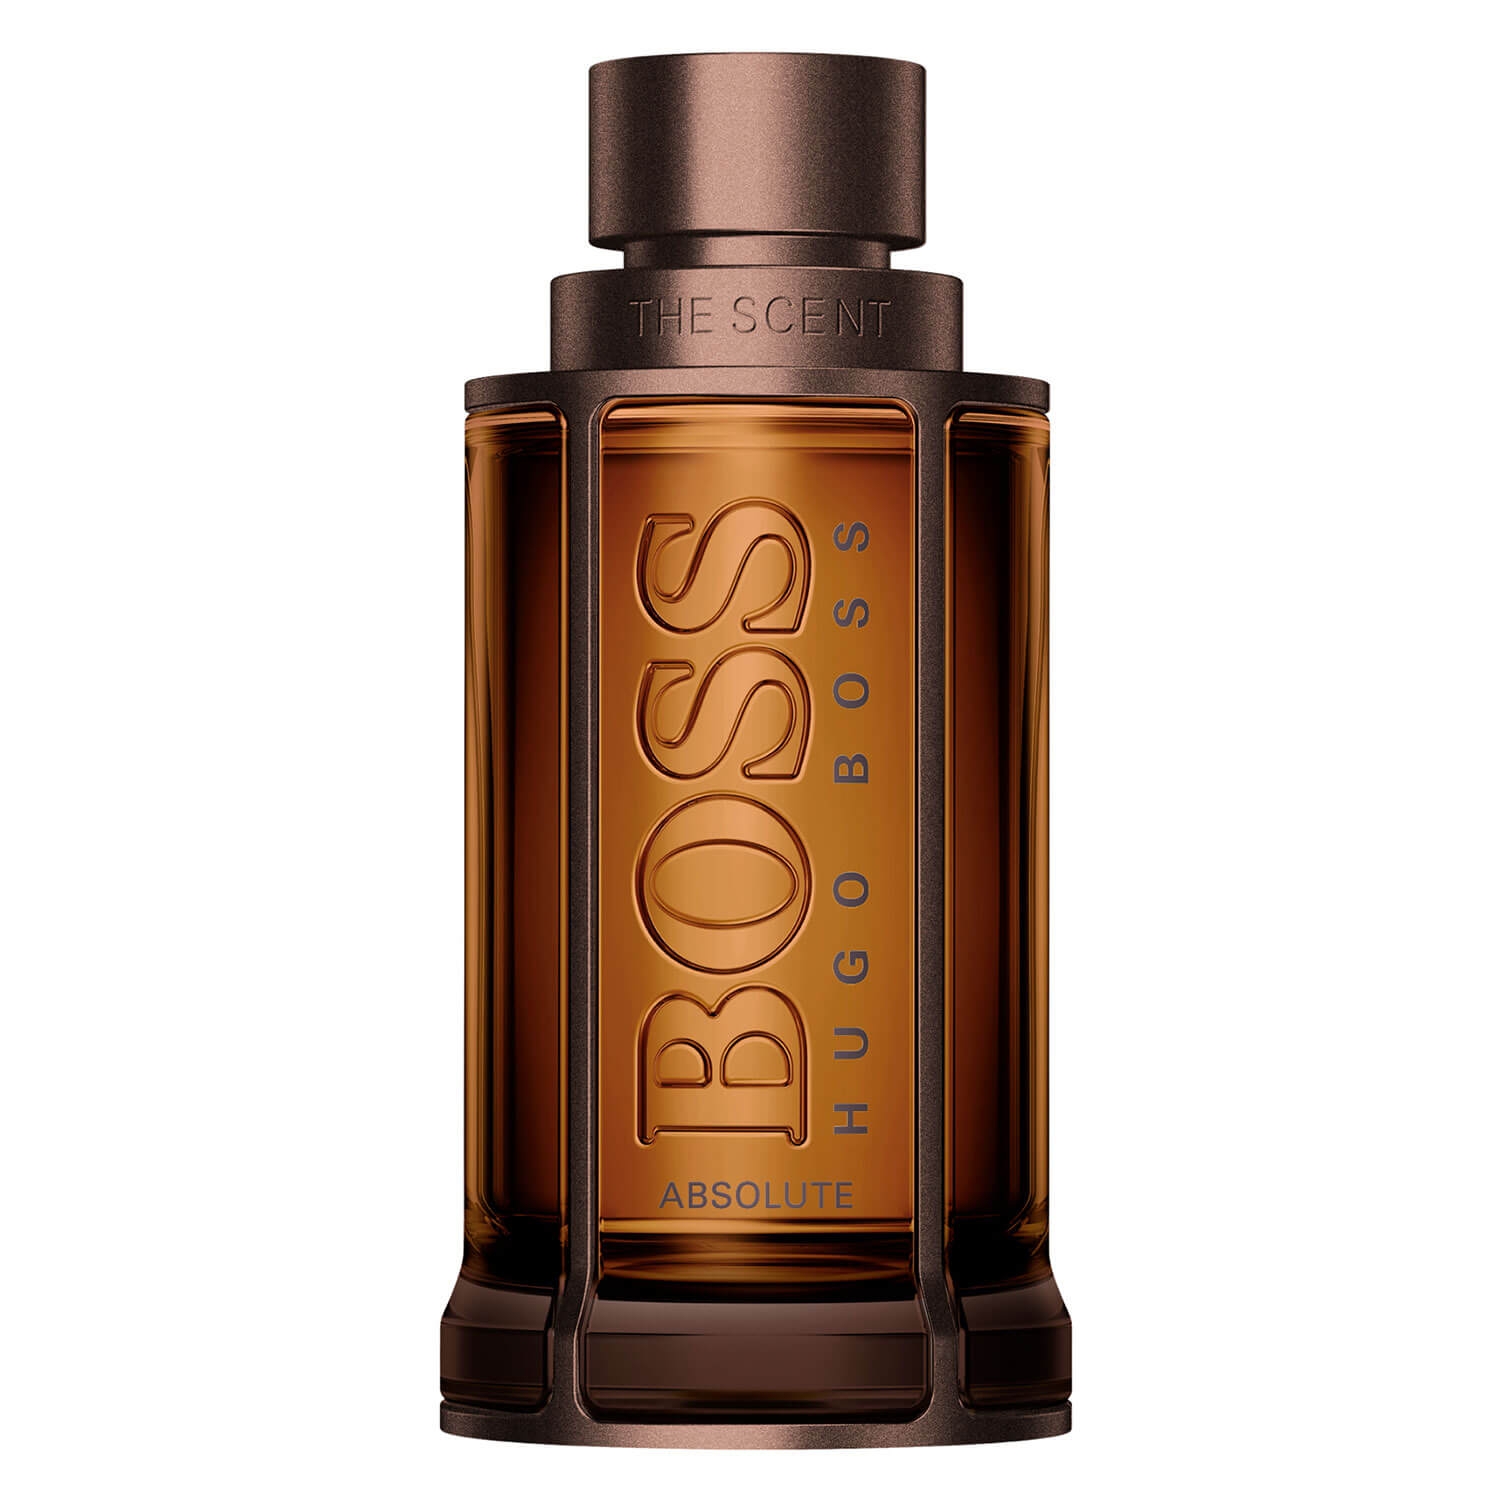 Produktbild von Boss The Scent - Absolute Eau de Parfum for Him